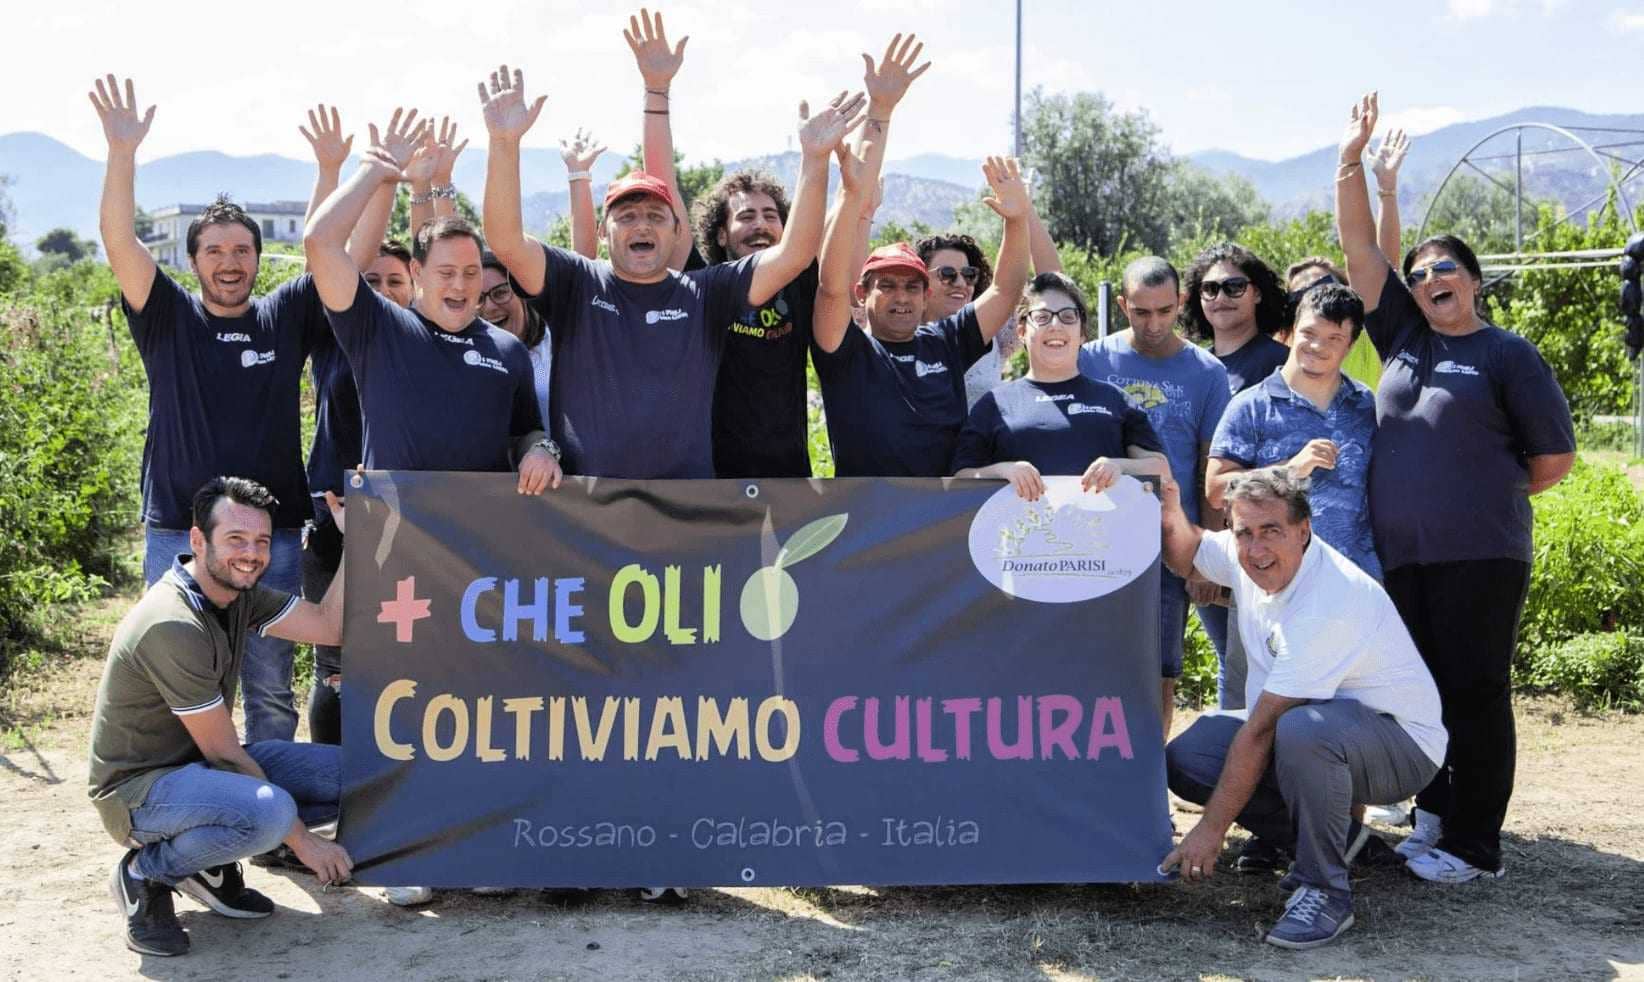 europa-welt-die-besten-olivenölwettbewerbe-starker-auftritt-der-kalabrischen-produzenten-bei-den-weltweiten-wettbewerben-von-olivenolen